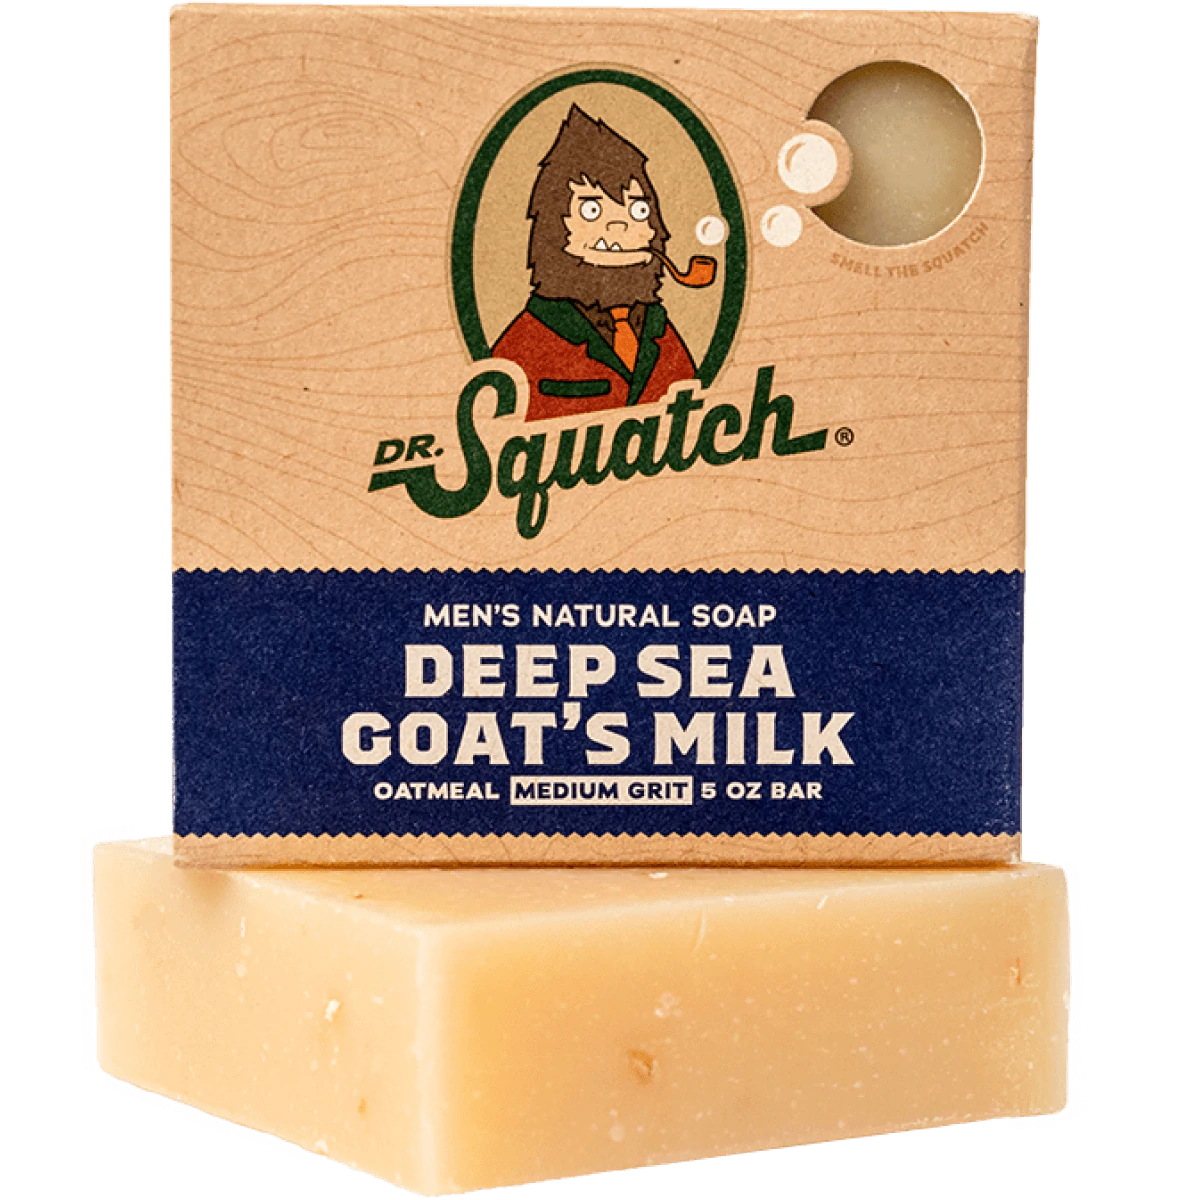 Dr. Squatch Men's Natural Soap Deep Sea Goat's Milk 5oz Bar – Spa